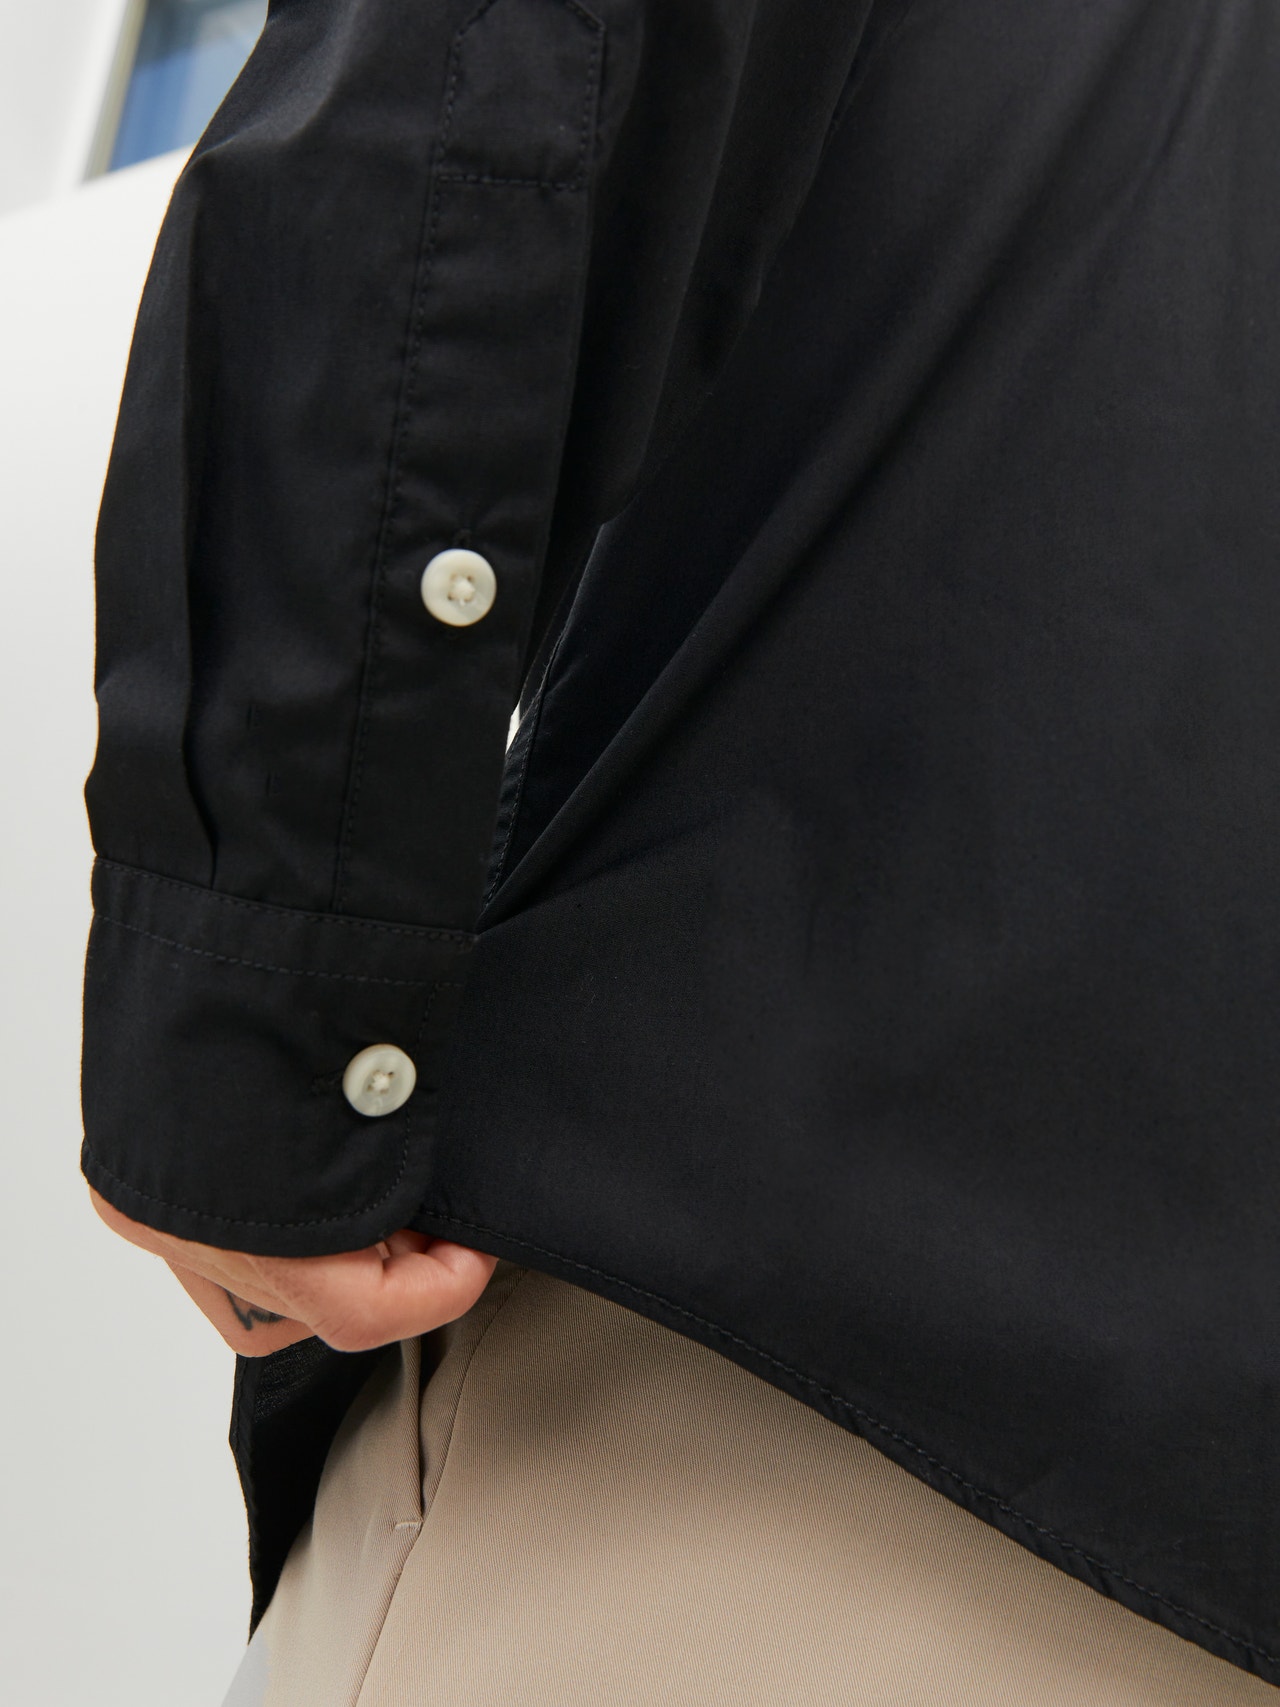 Jack & Jones Camisa informal Oversize Fit -Black - 12233117